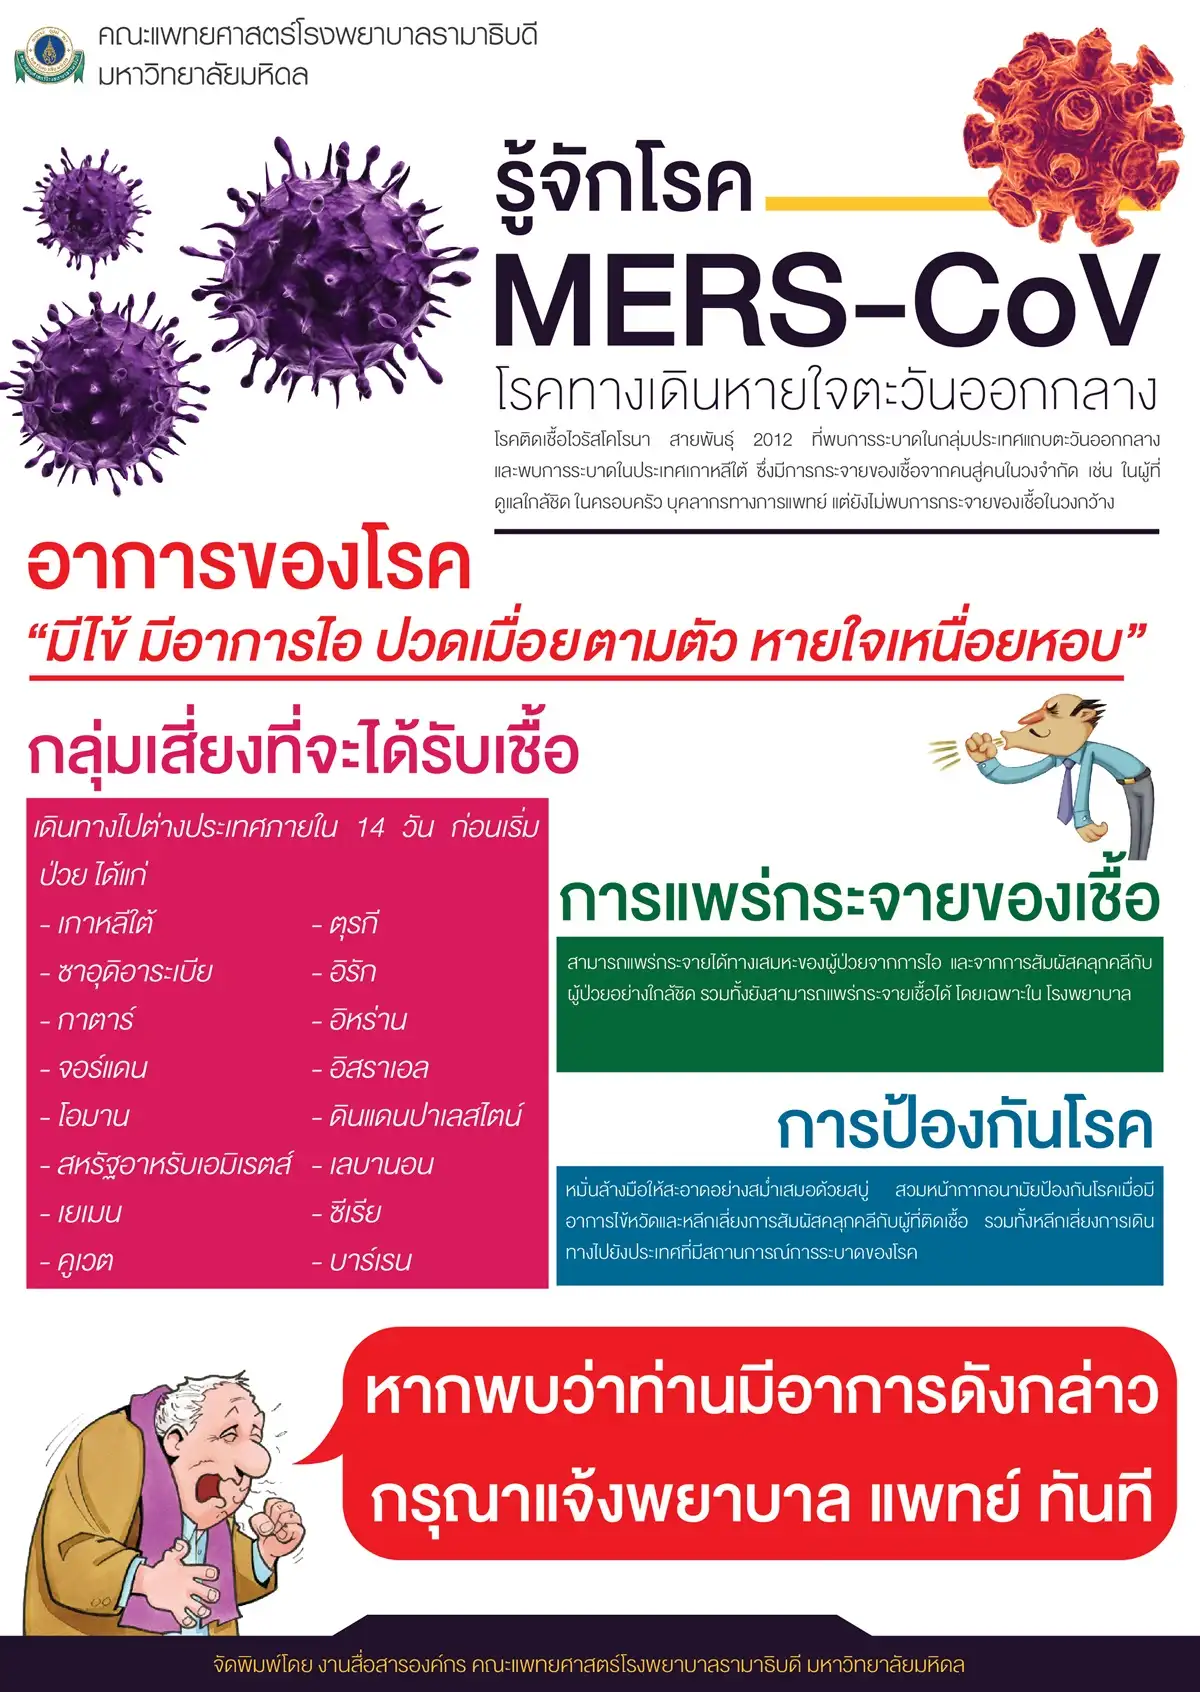 สาธารณสุข ยืนยัน พบผู้ป่วยเมอร์สรายแรกในไทย HealthServ